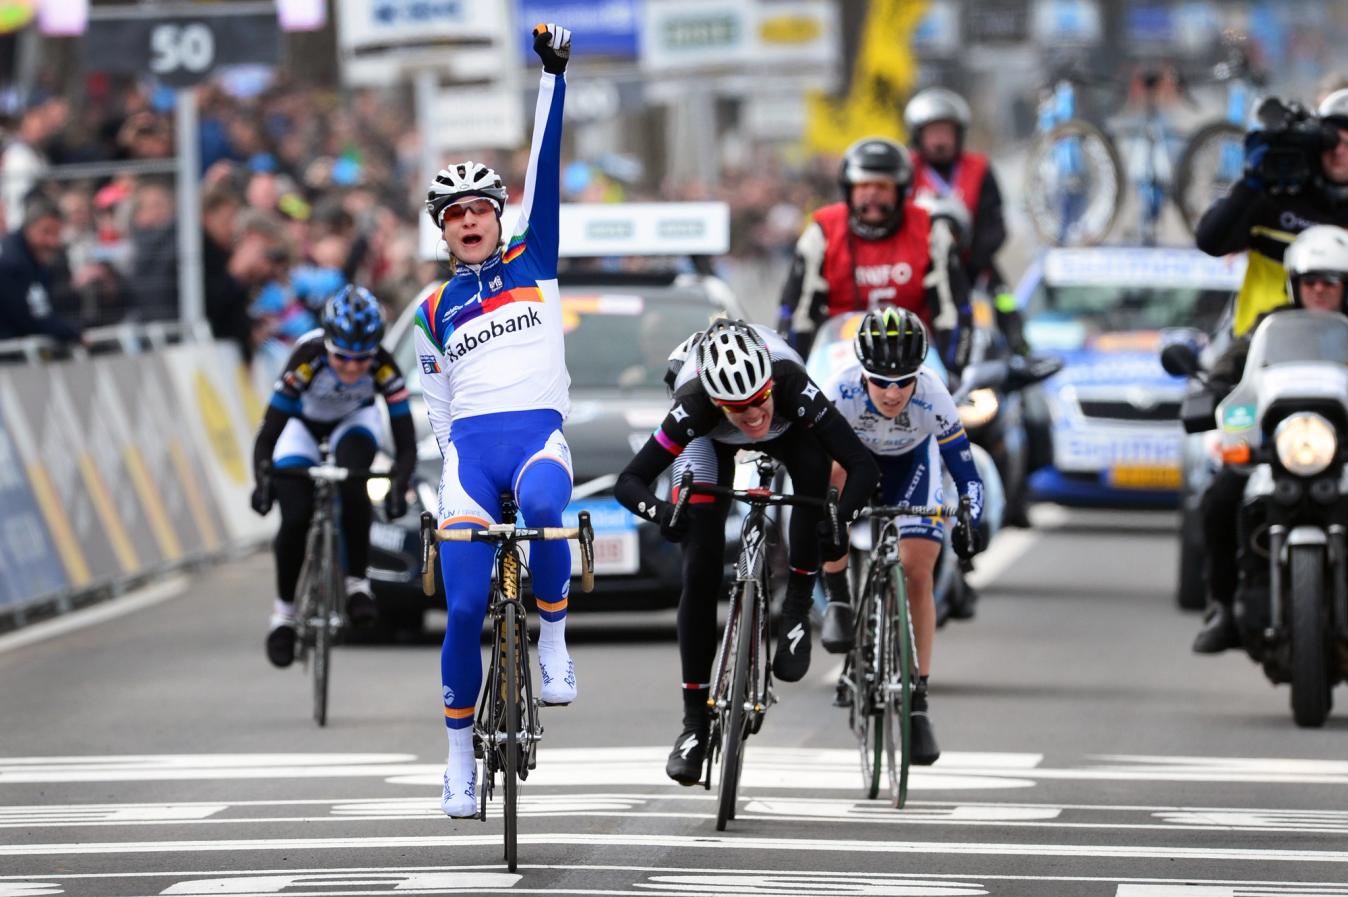 Vos beat Ellen van Dijk to the line in the 2013 Tour of Flanders